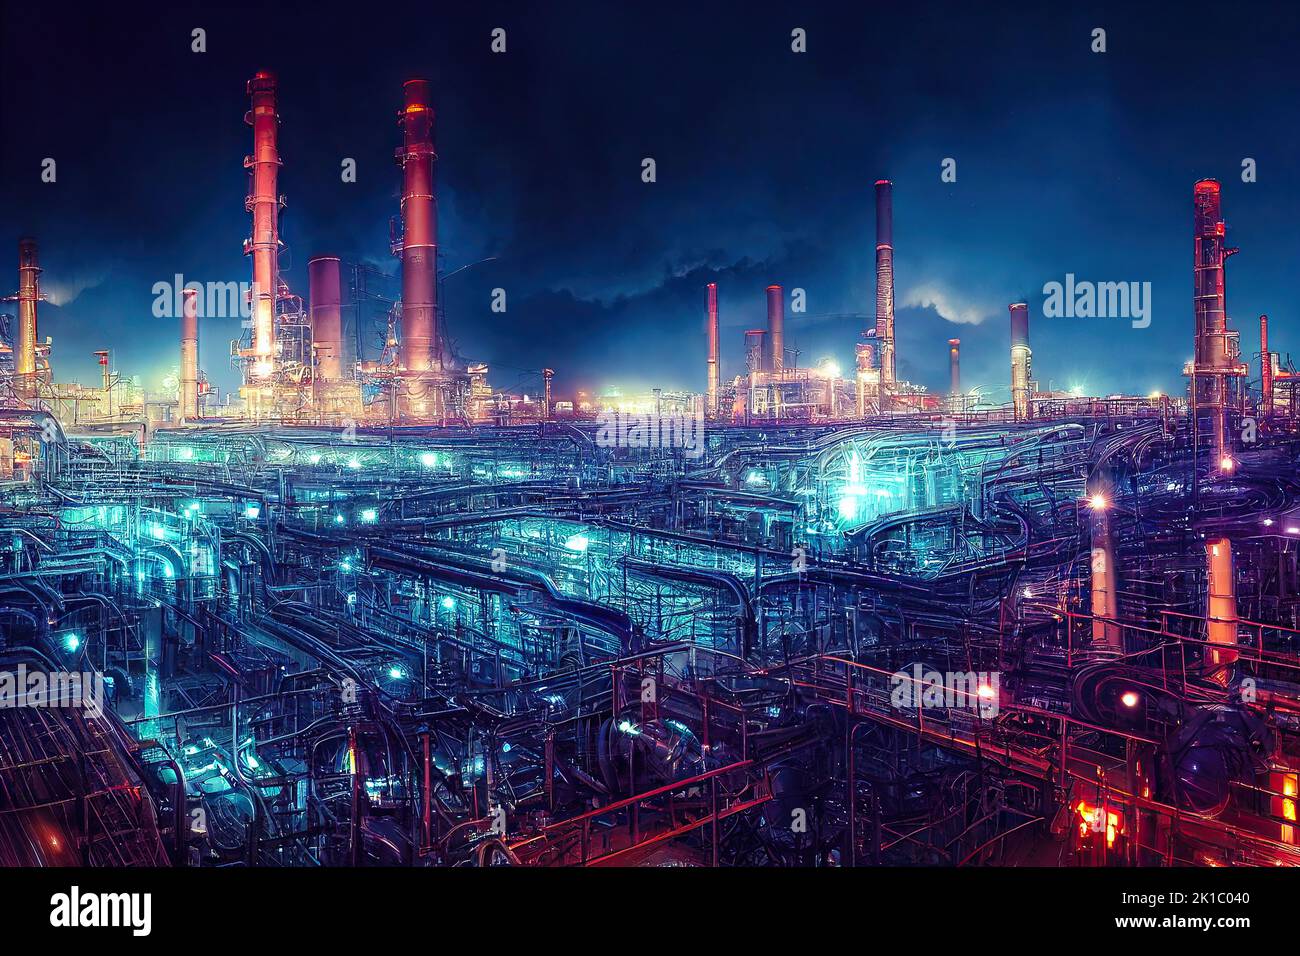 Fábrica de refinería de petróleo industrial iluminada en la noche con luces brillantes de azul y rojo. Almacén de productos químicos con tuberías y chimeneas Foto de stock